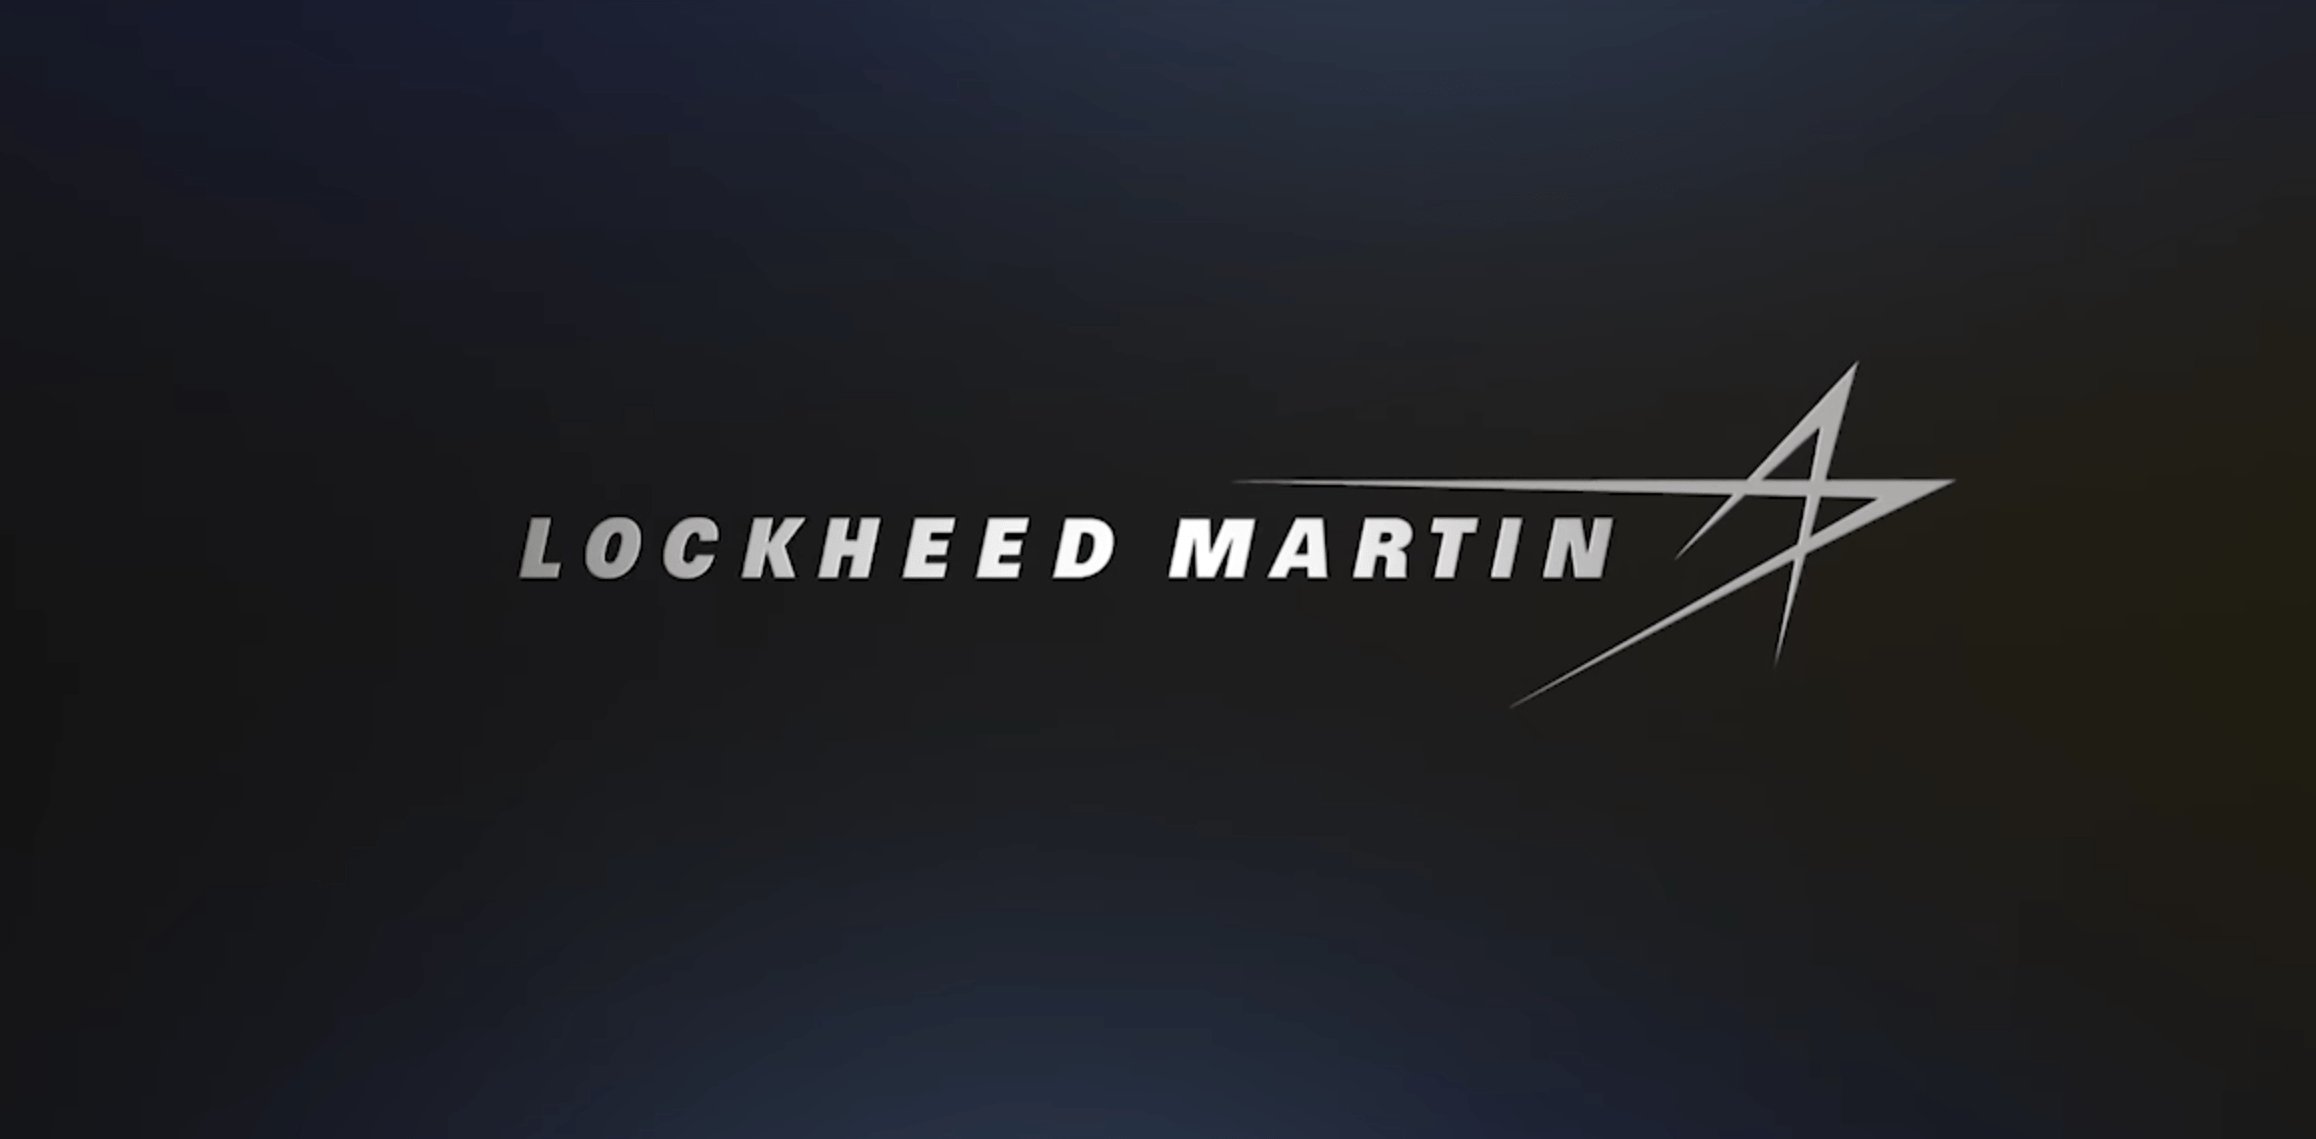 NASA podpisała kontrakt z Lockheed Martin na 4,6 miliarda dolarów